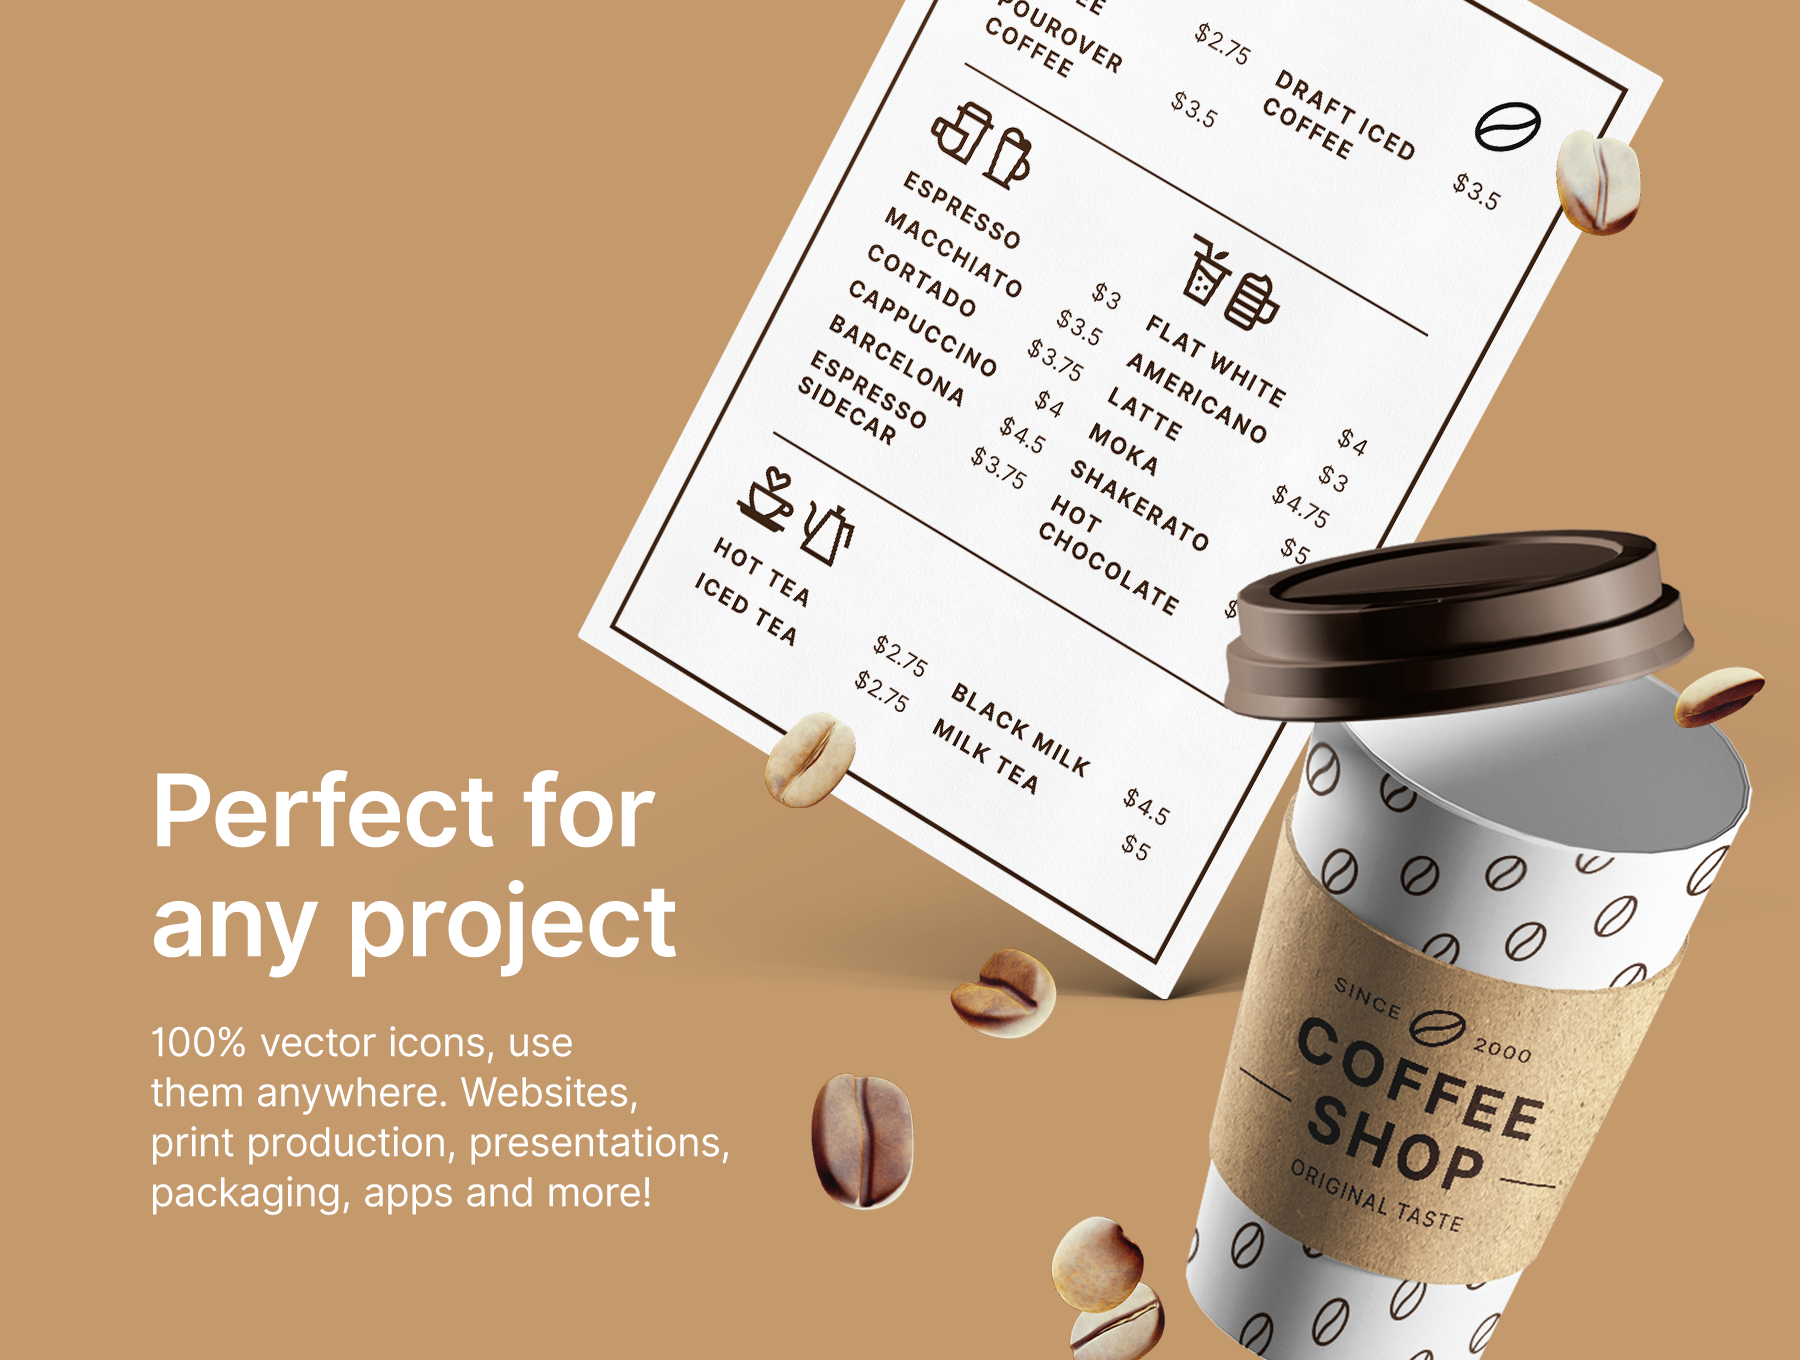 高端细致的咖啡品牌元素图标素材 #364307